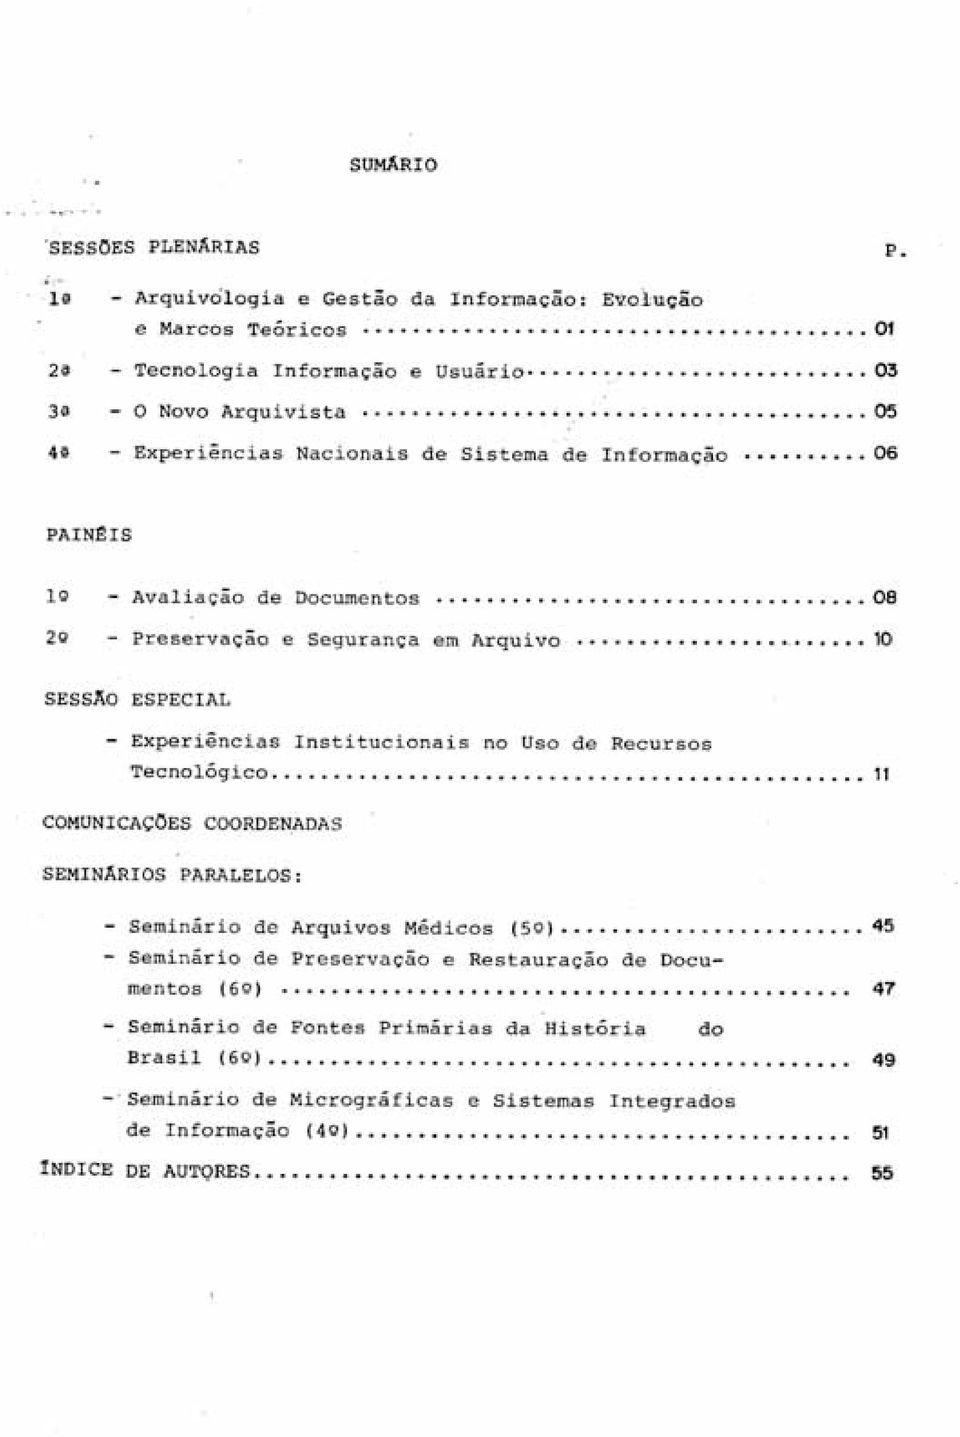 .. 11 COMUNICAÇÕES COORDENADAS SEMINÁRIOS PARALELOS: Seminário de Arquivos Médicos Seminário de Preservação e Restauração de Docu (50).... 45 mentos (60).